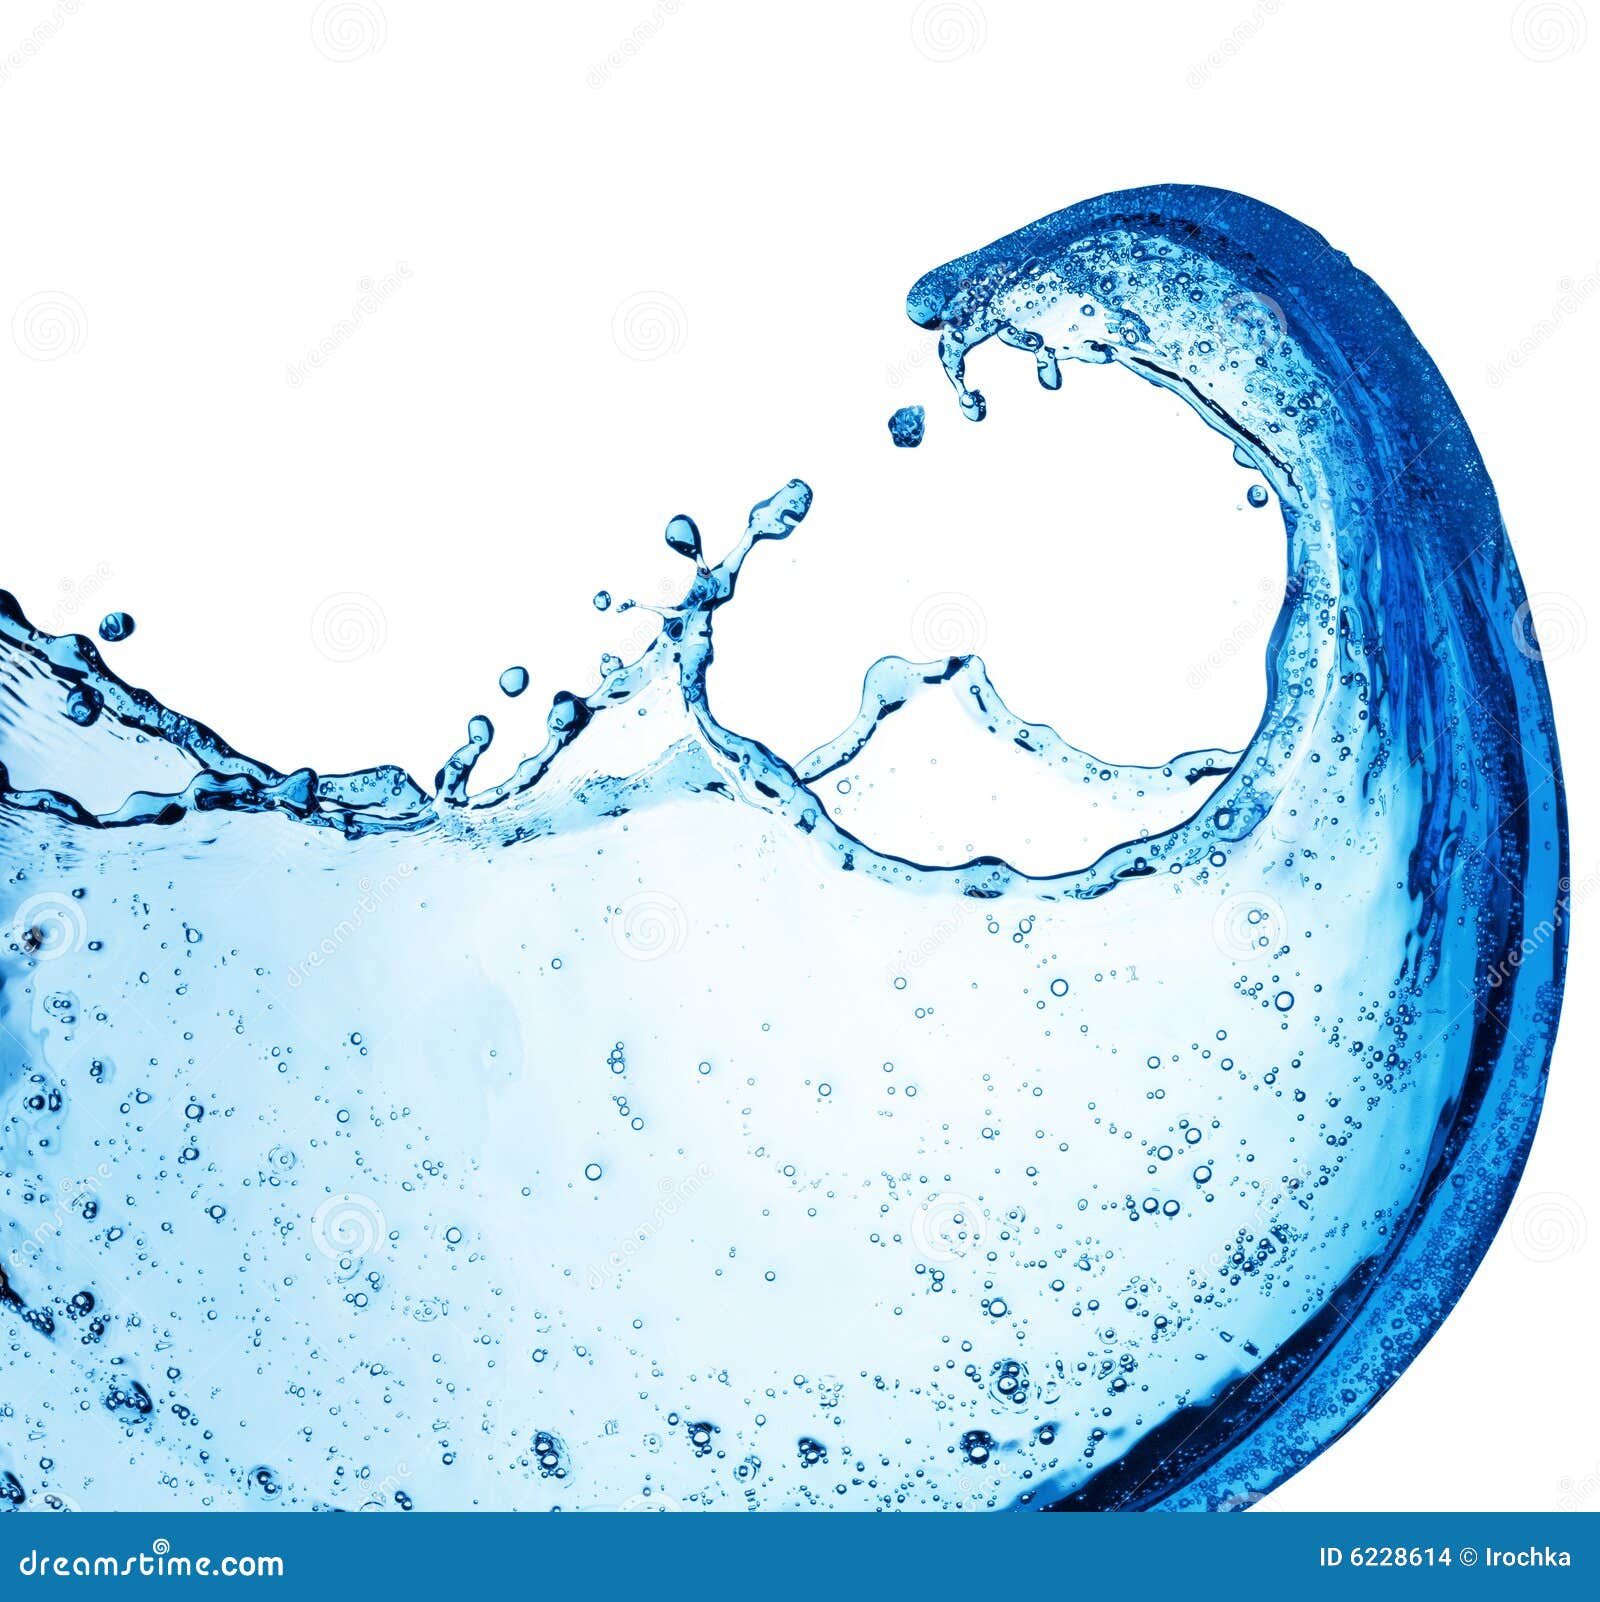  claboussure De  L  eau  Bleue Photo stock Image du remous 